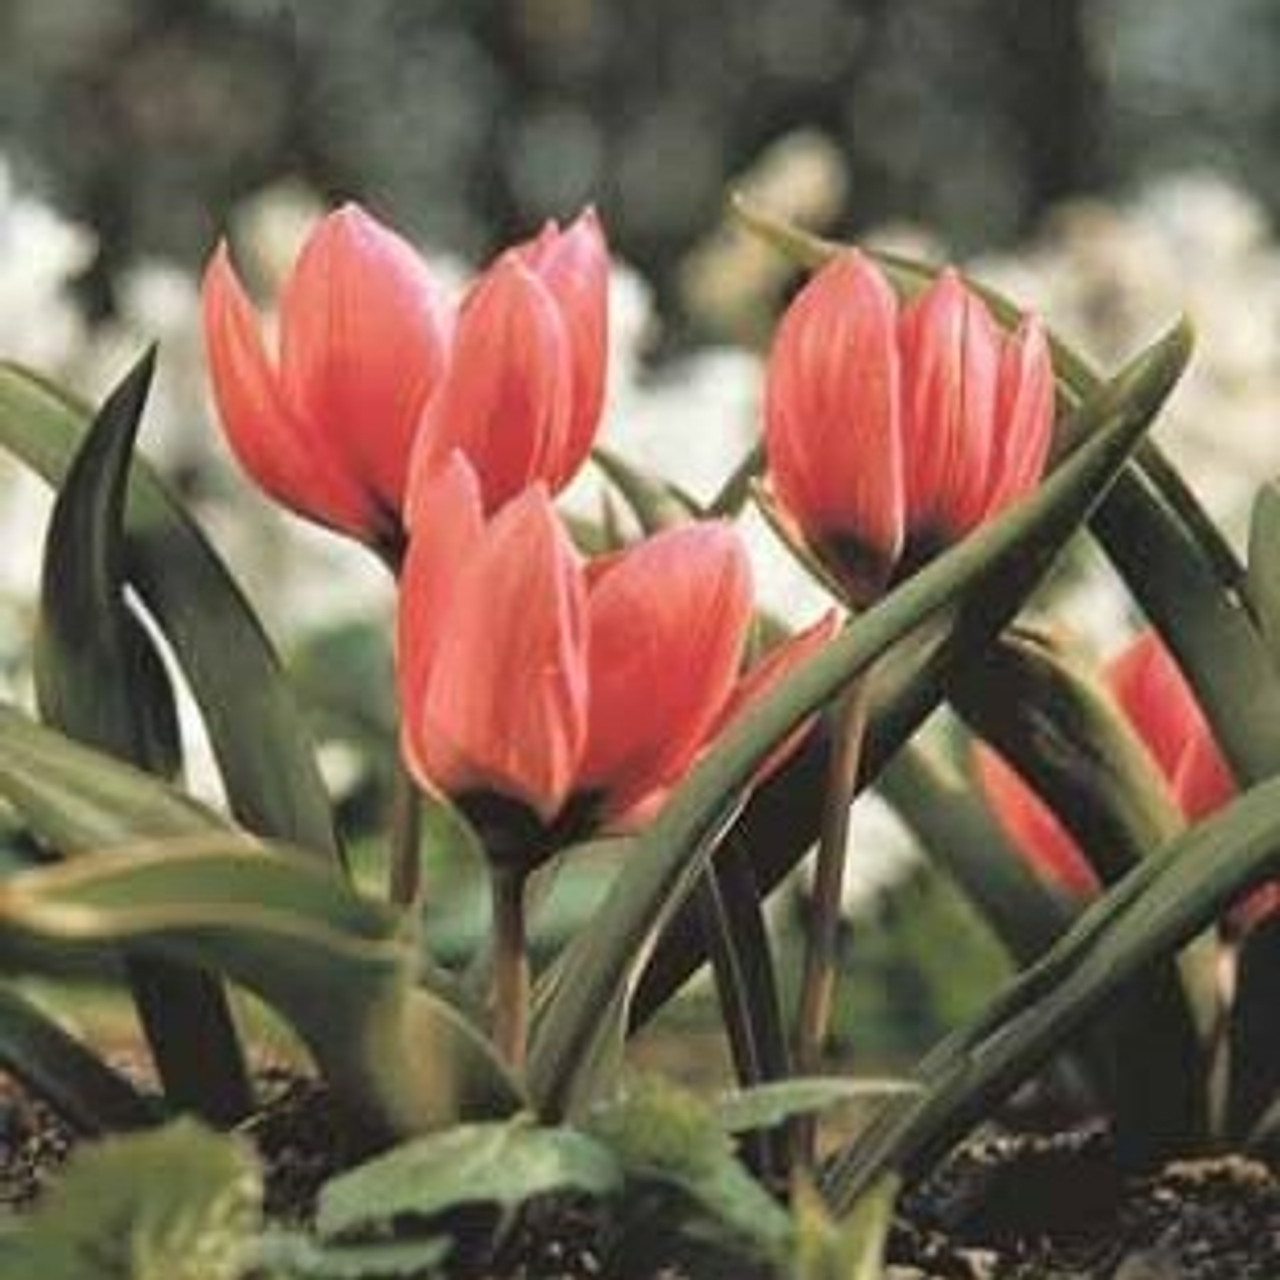 Division 15 - Species Tulips